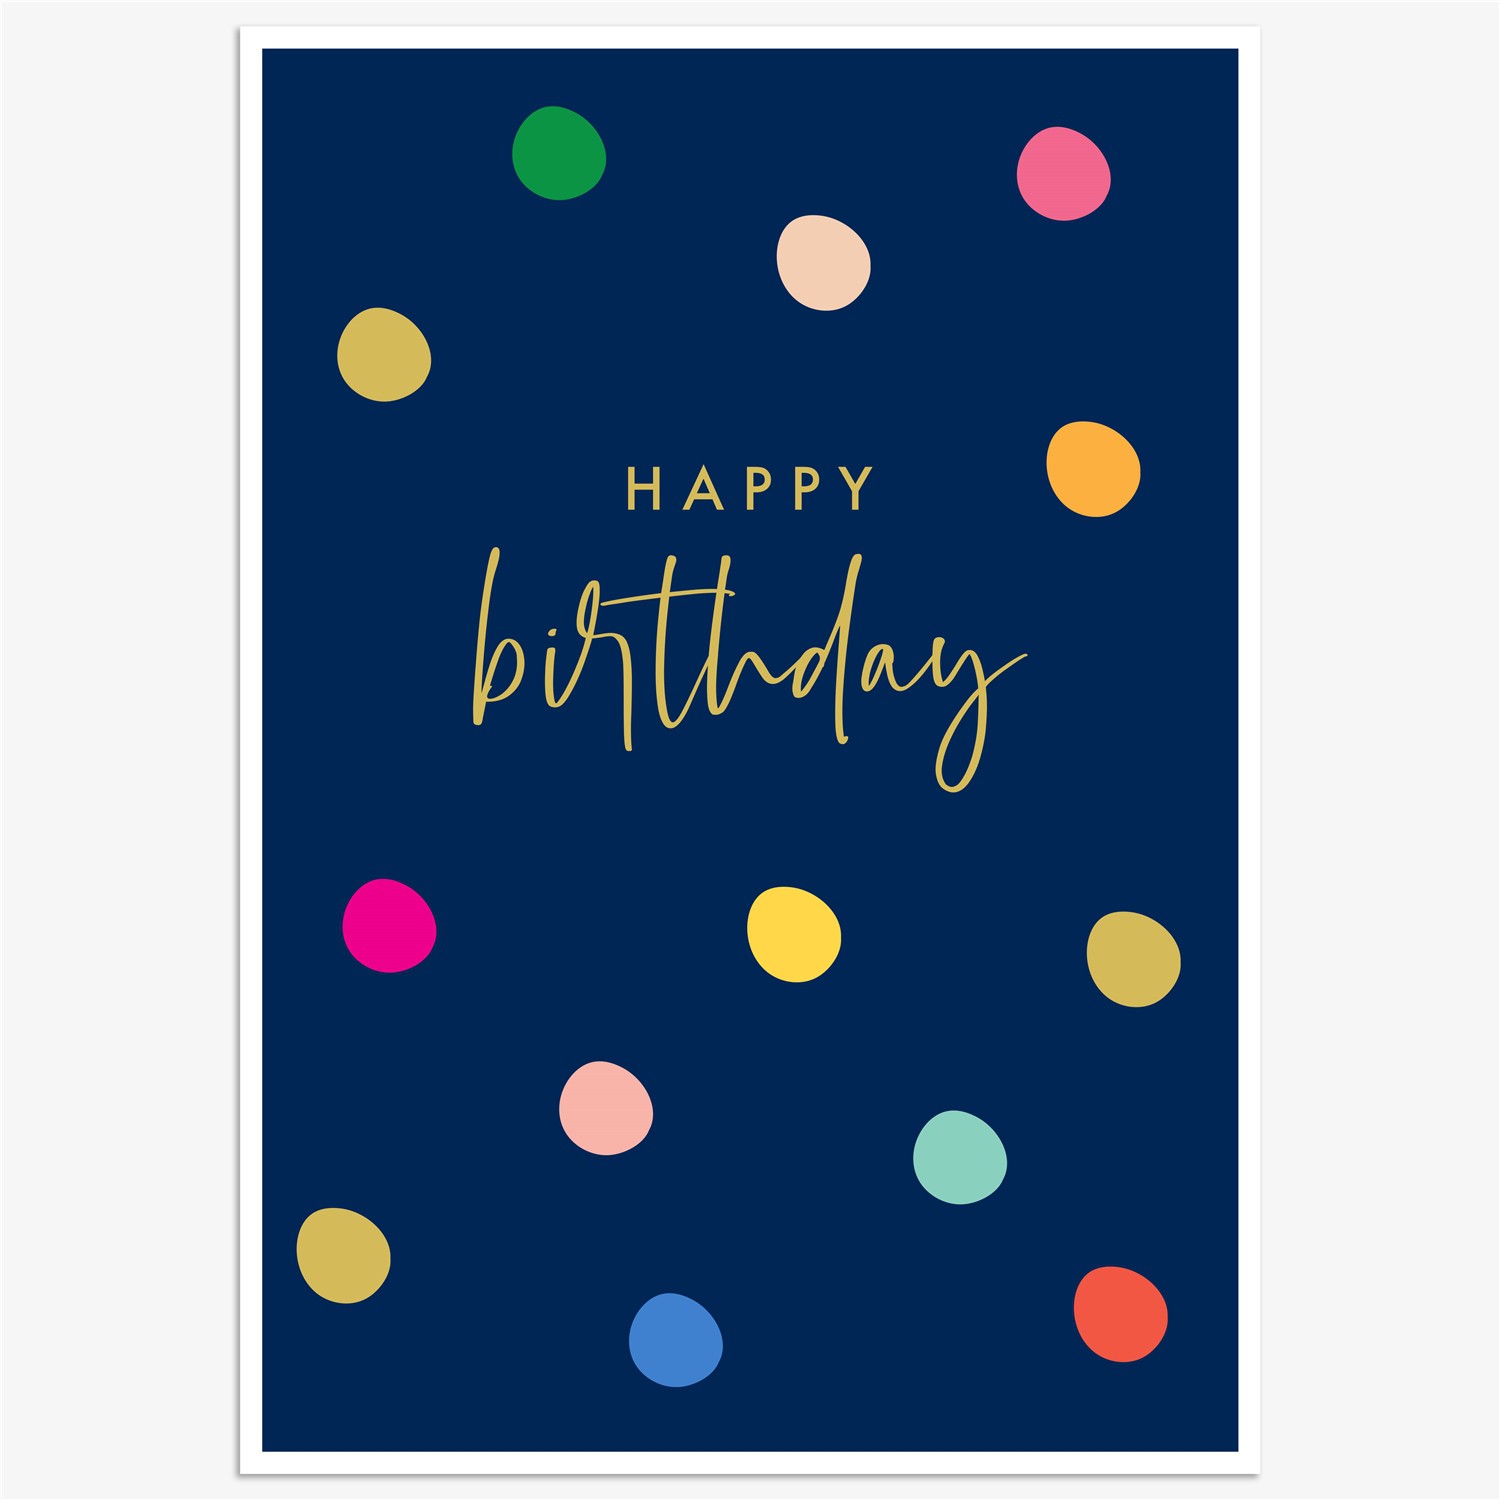 כרטיס ברכה יום הולדת - נקודות צבעוניות רקע כחול